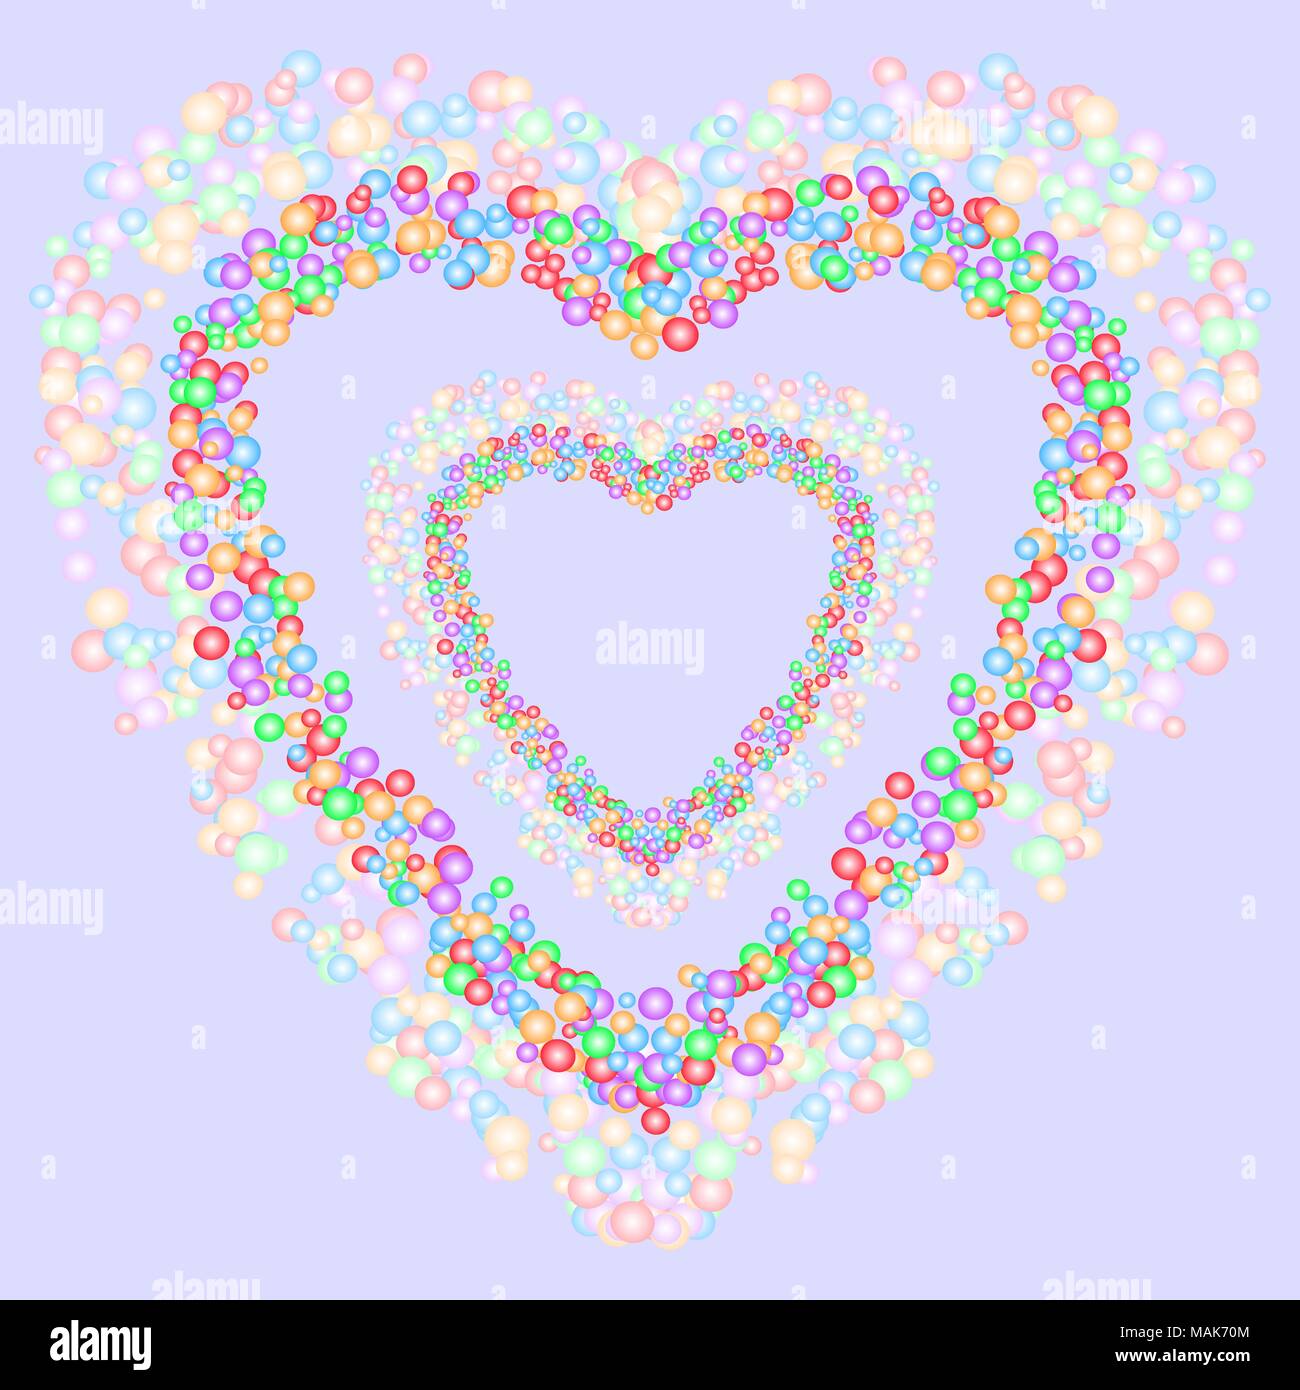 Forma corazón patrón formado por burbujas de colores en diversos tamaños sobre fondo gris azulado. Ilustración vectorial. Ilustración del Vector